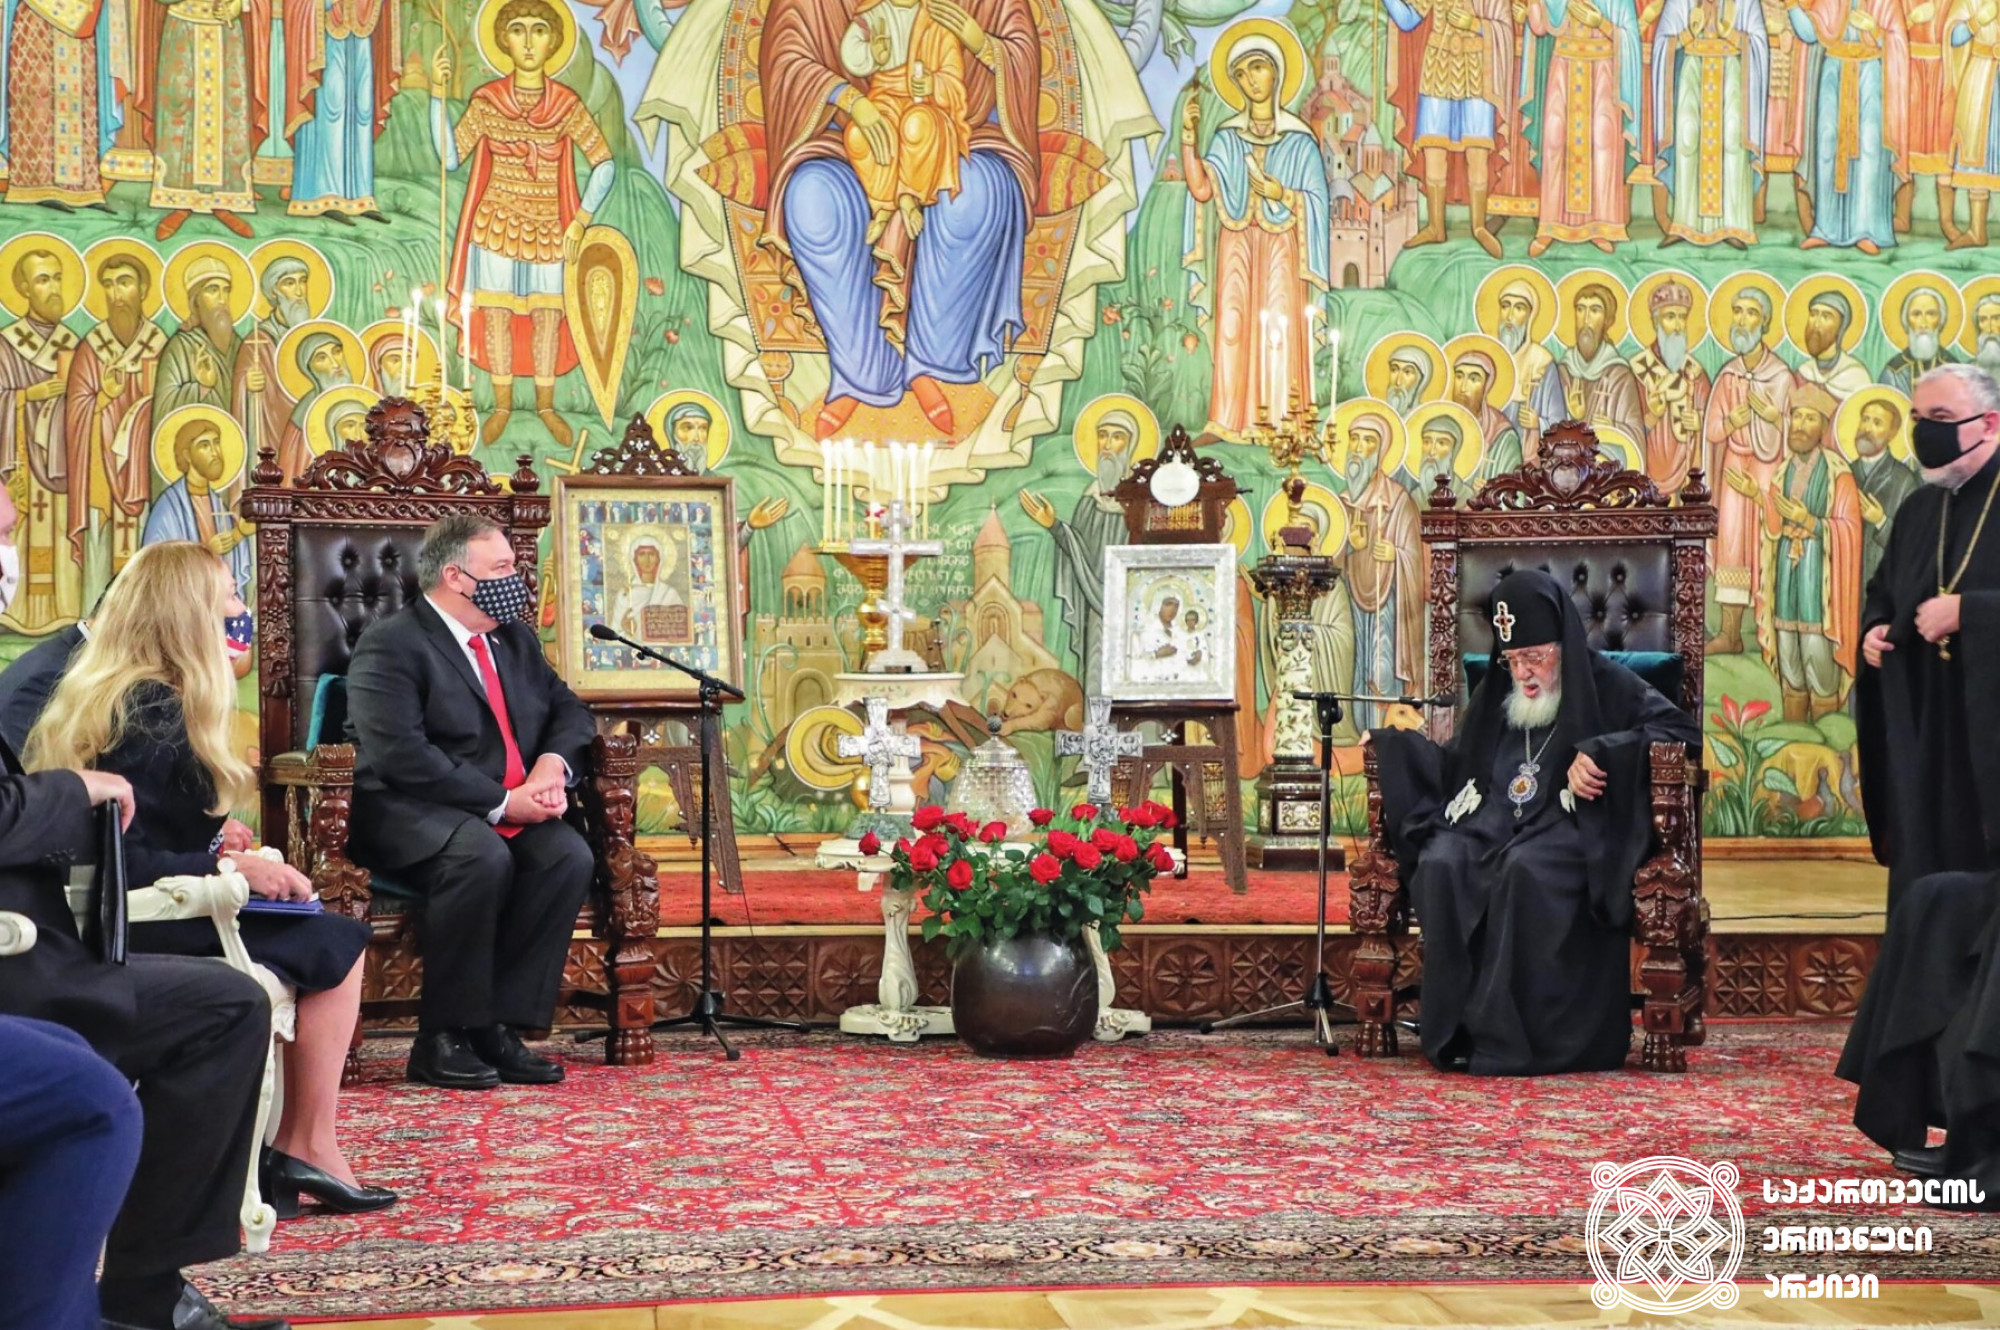 აშშ-ის სახელმწიფო მდივანი მაიკ პომპეო და საქართველოს კათოლიკოს-პატრიარქი ილია მეორე განიხილავენ საქართველოს განსაკუთრებულ როლს
მსოფლიოში რელიგიის თავისუფლების დაცვის საკითხში.<br>
თბილისი. 2020 წლის 18 ნოემბერი.<br>
ფოტო საქართველოში აშშ-ის საელჩოდან.<br>
U.S. Secretary of State Mike Pompeo and Georgian Catholics Patriarch Ilia II discuss Georgia’s important role protecting religious freedom in the world.<br>
Tbilisi. November 18, 2020. <br>
Photo from U.S. Embassy to Georgia.